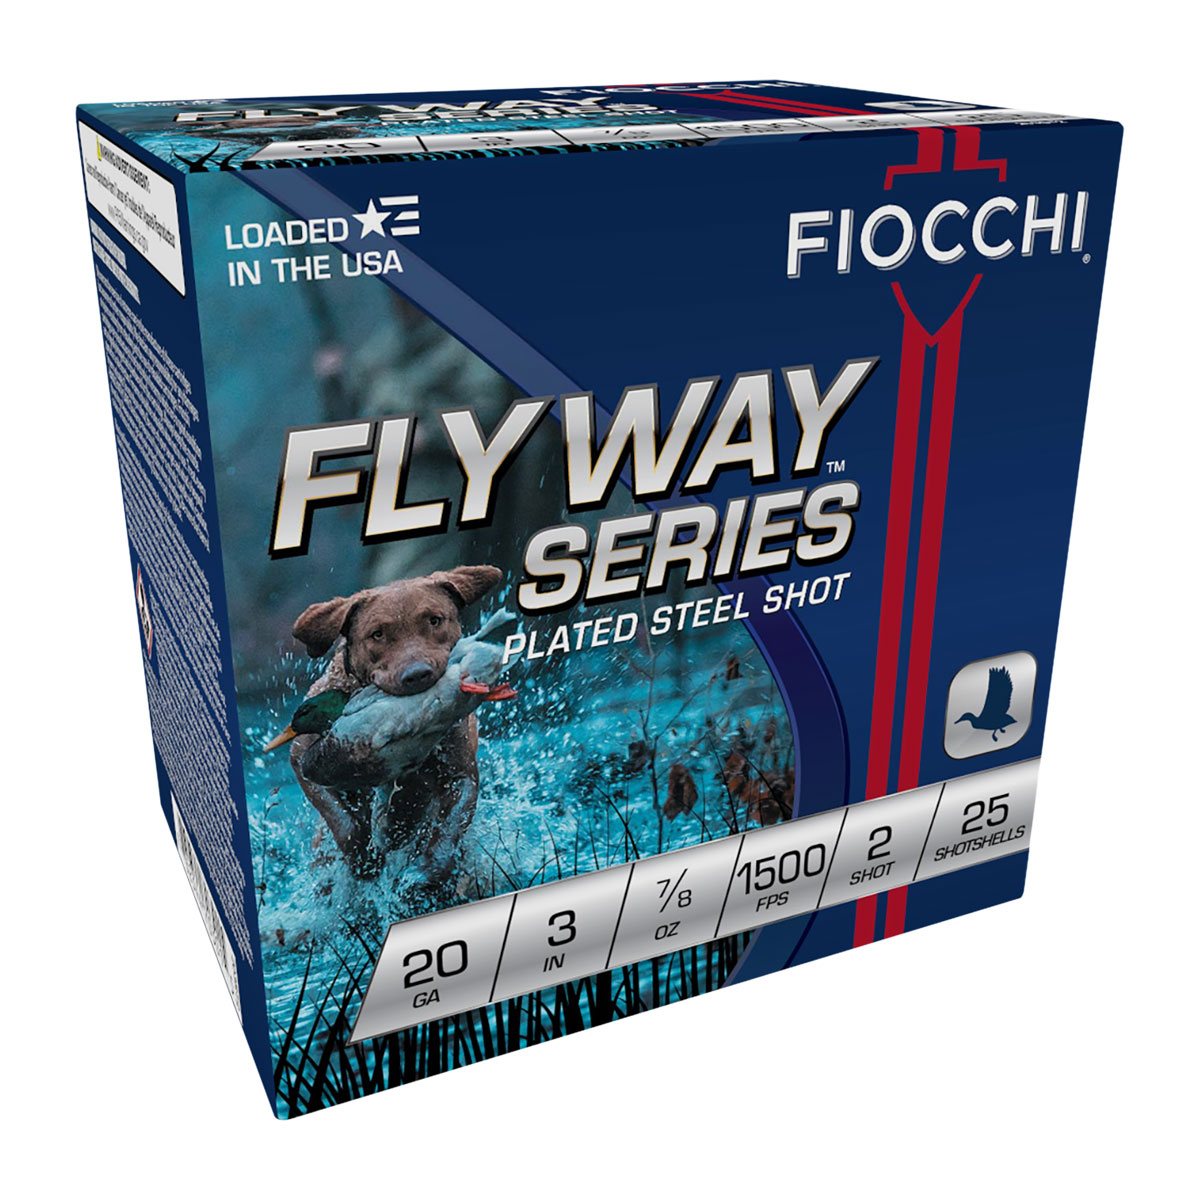 FIOCCHI AMMUNITION - FLYWAY 20 GAUGE AMMO